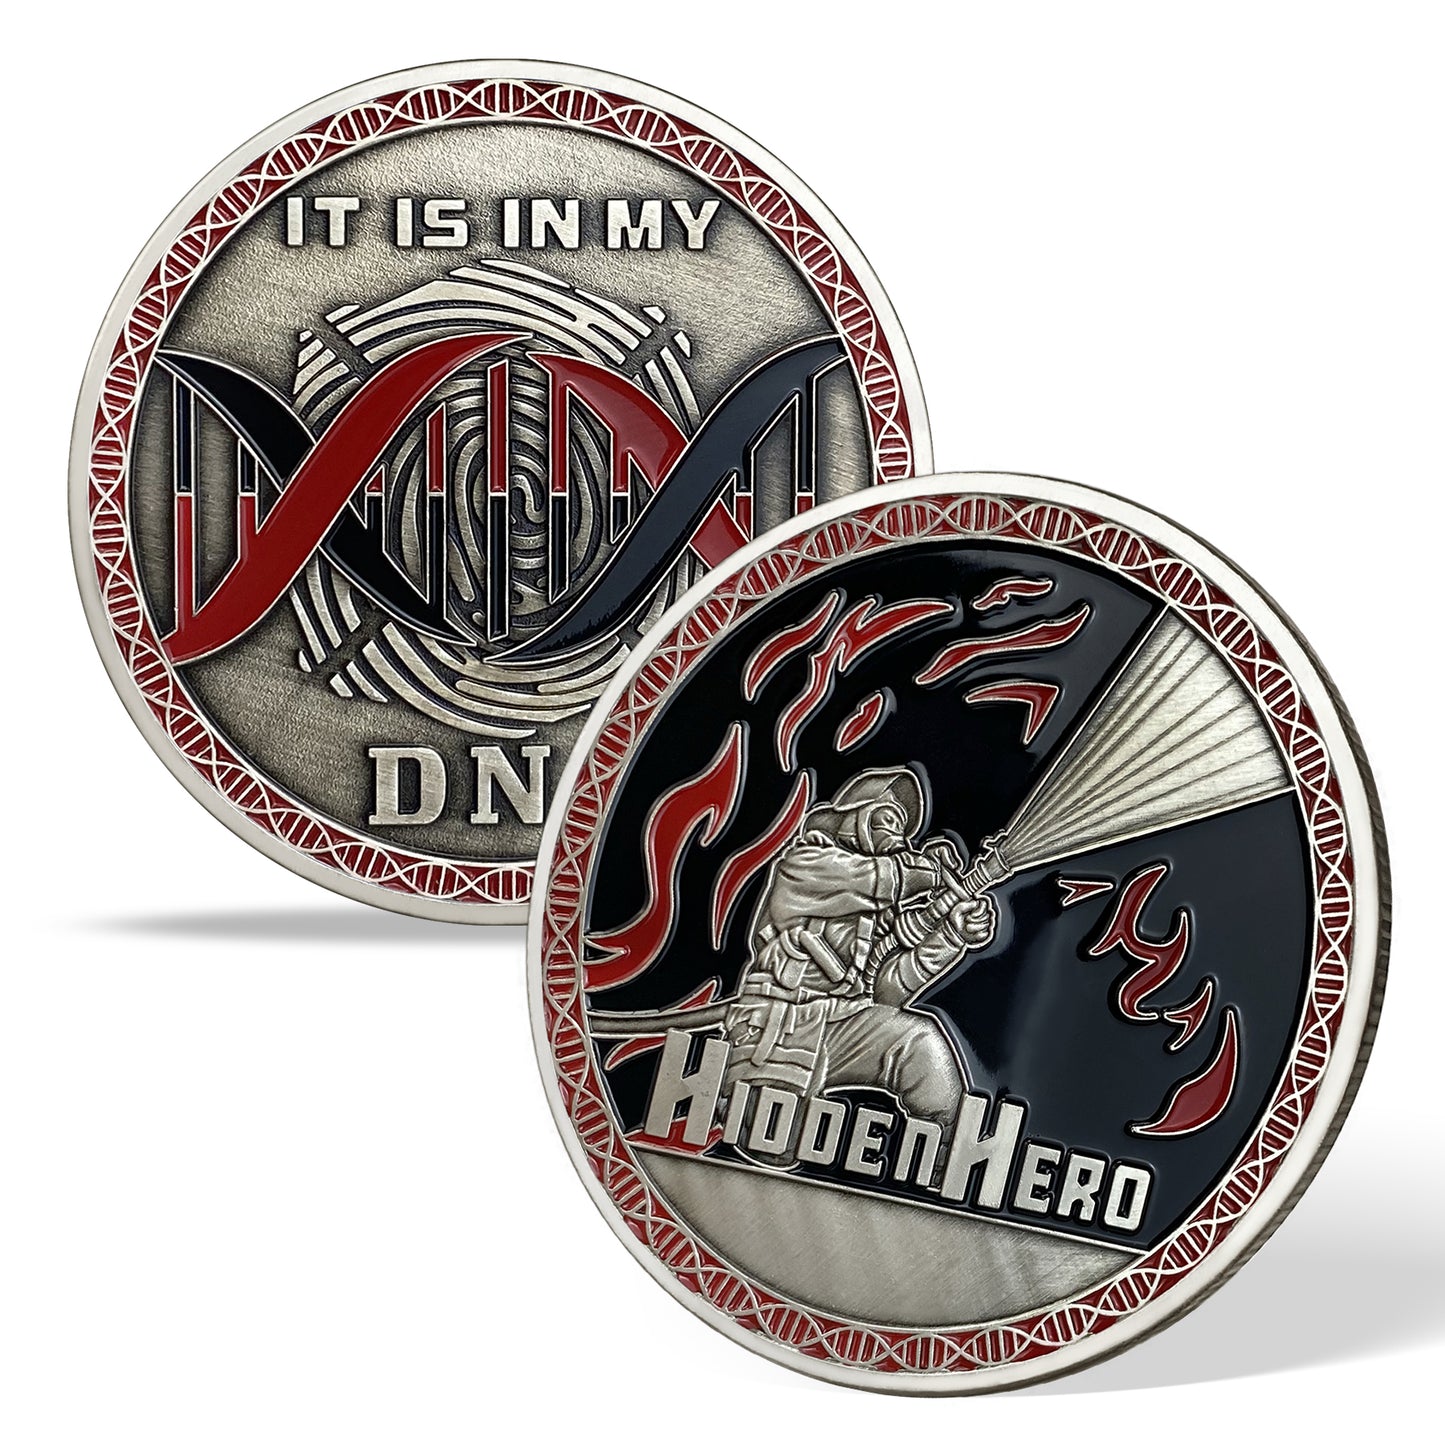 Hidden Hero Firefighter Challenge Coin